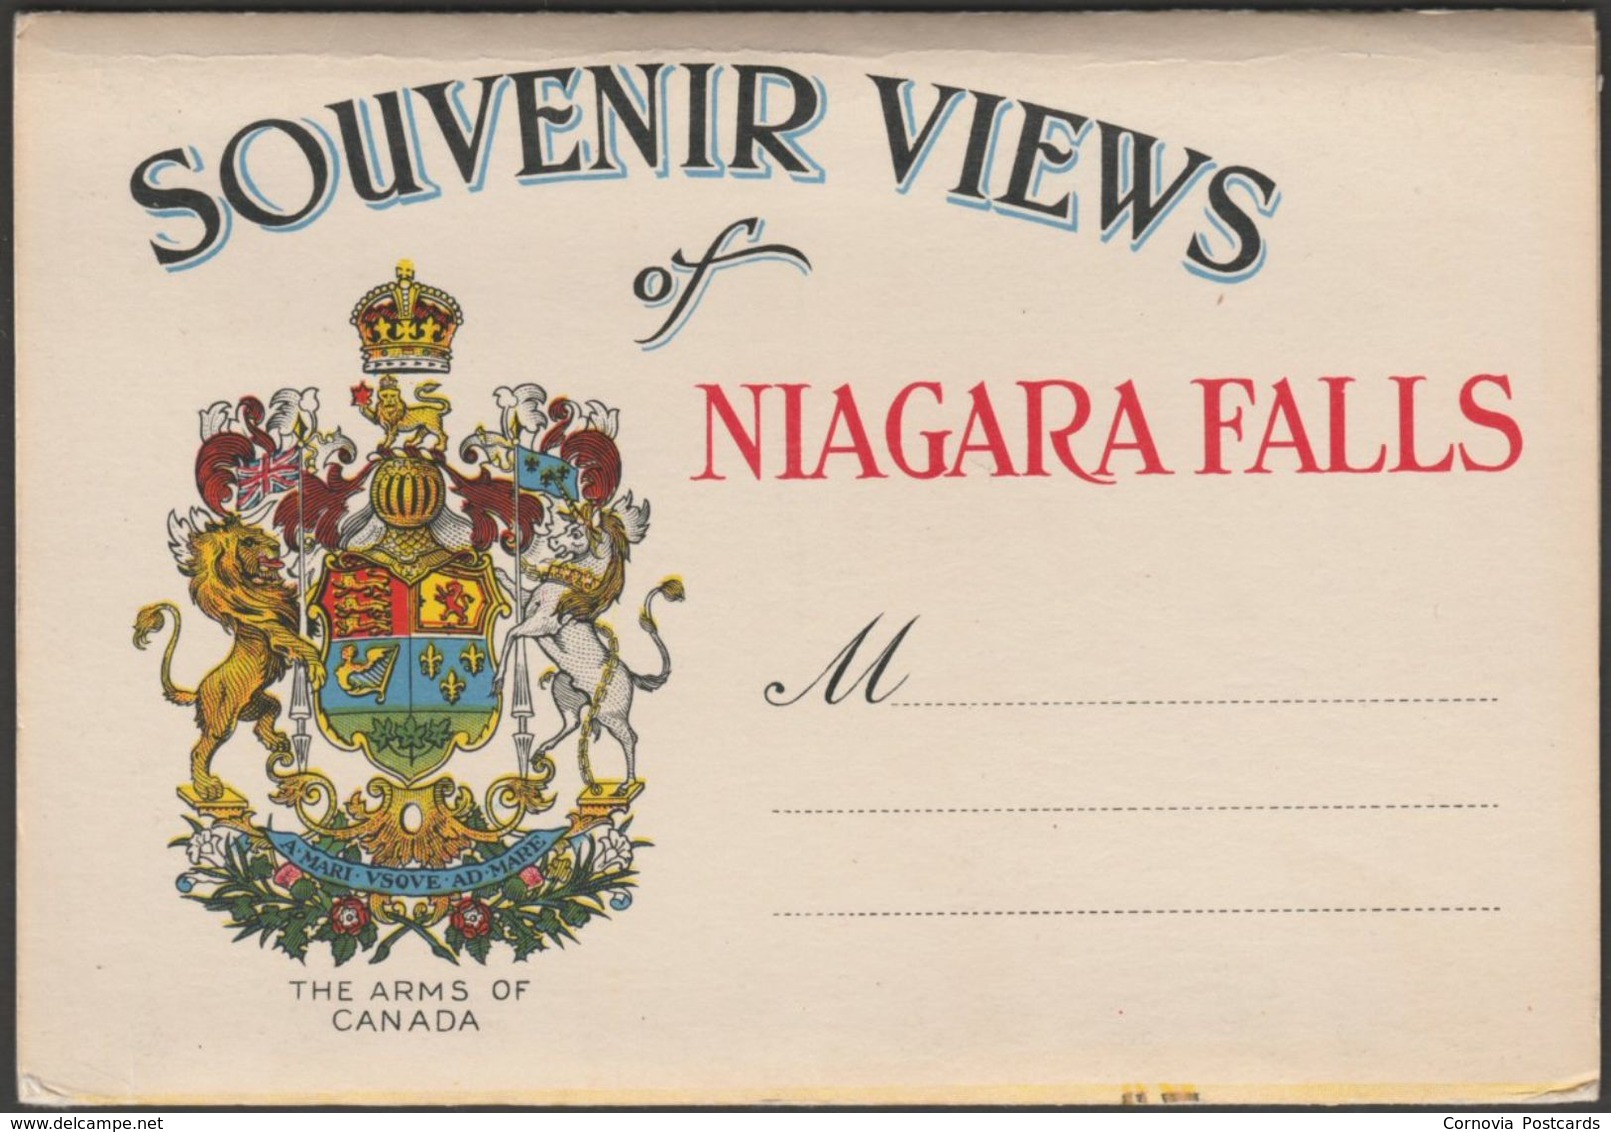 20 Souvenir Views Of Niagara Falls, Ontario, C.1940 - Postcard Views - Niagara Falls